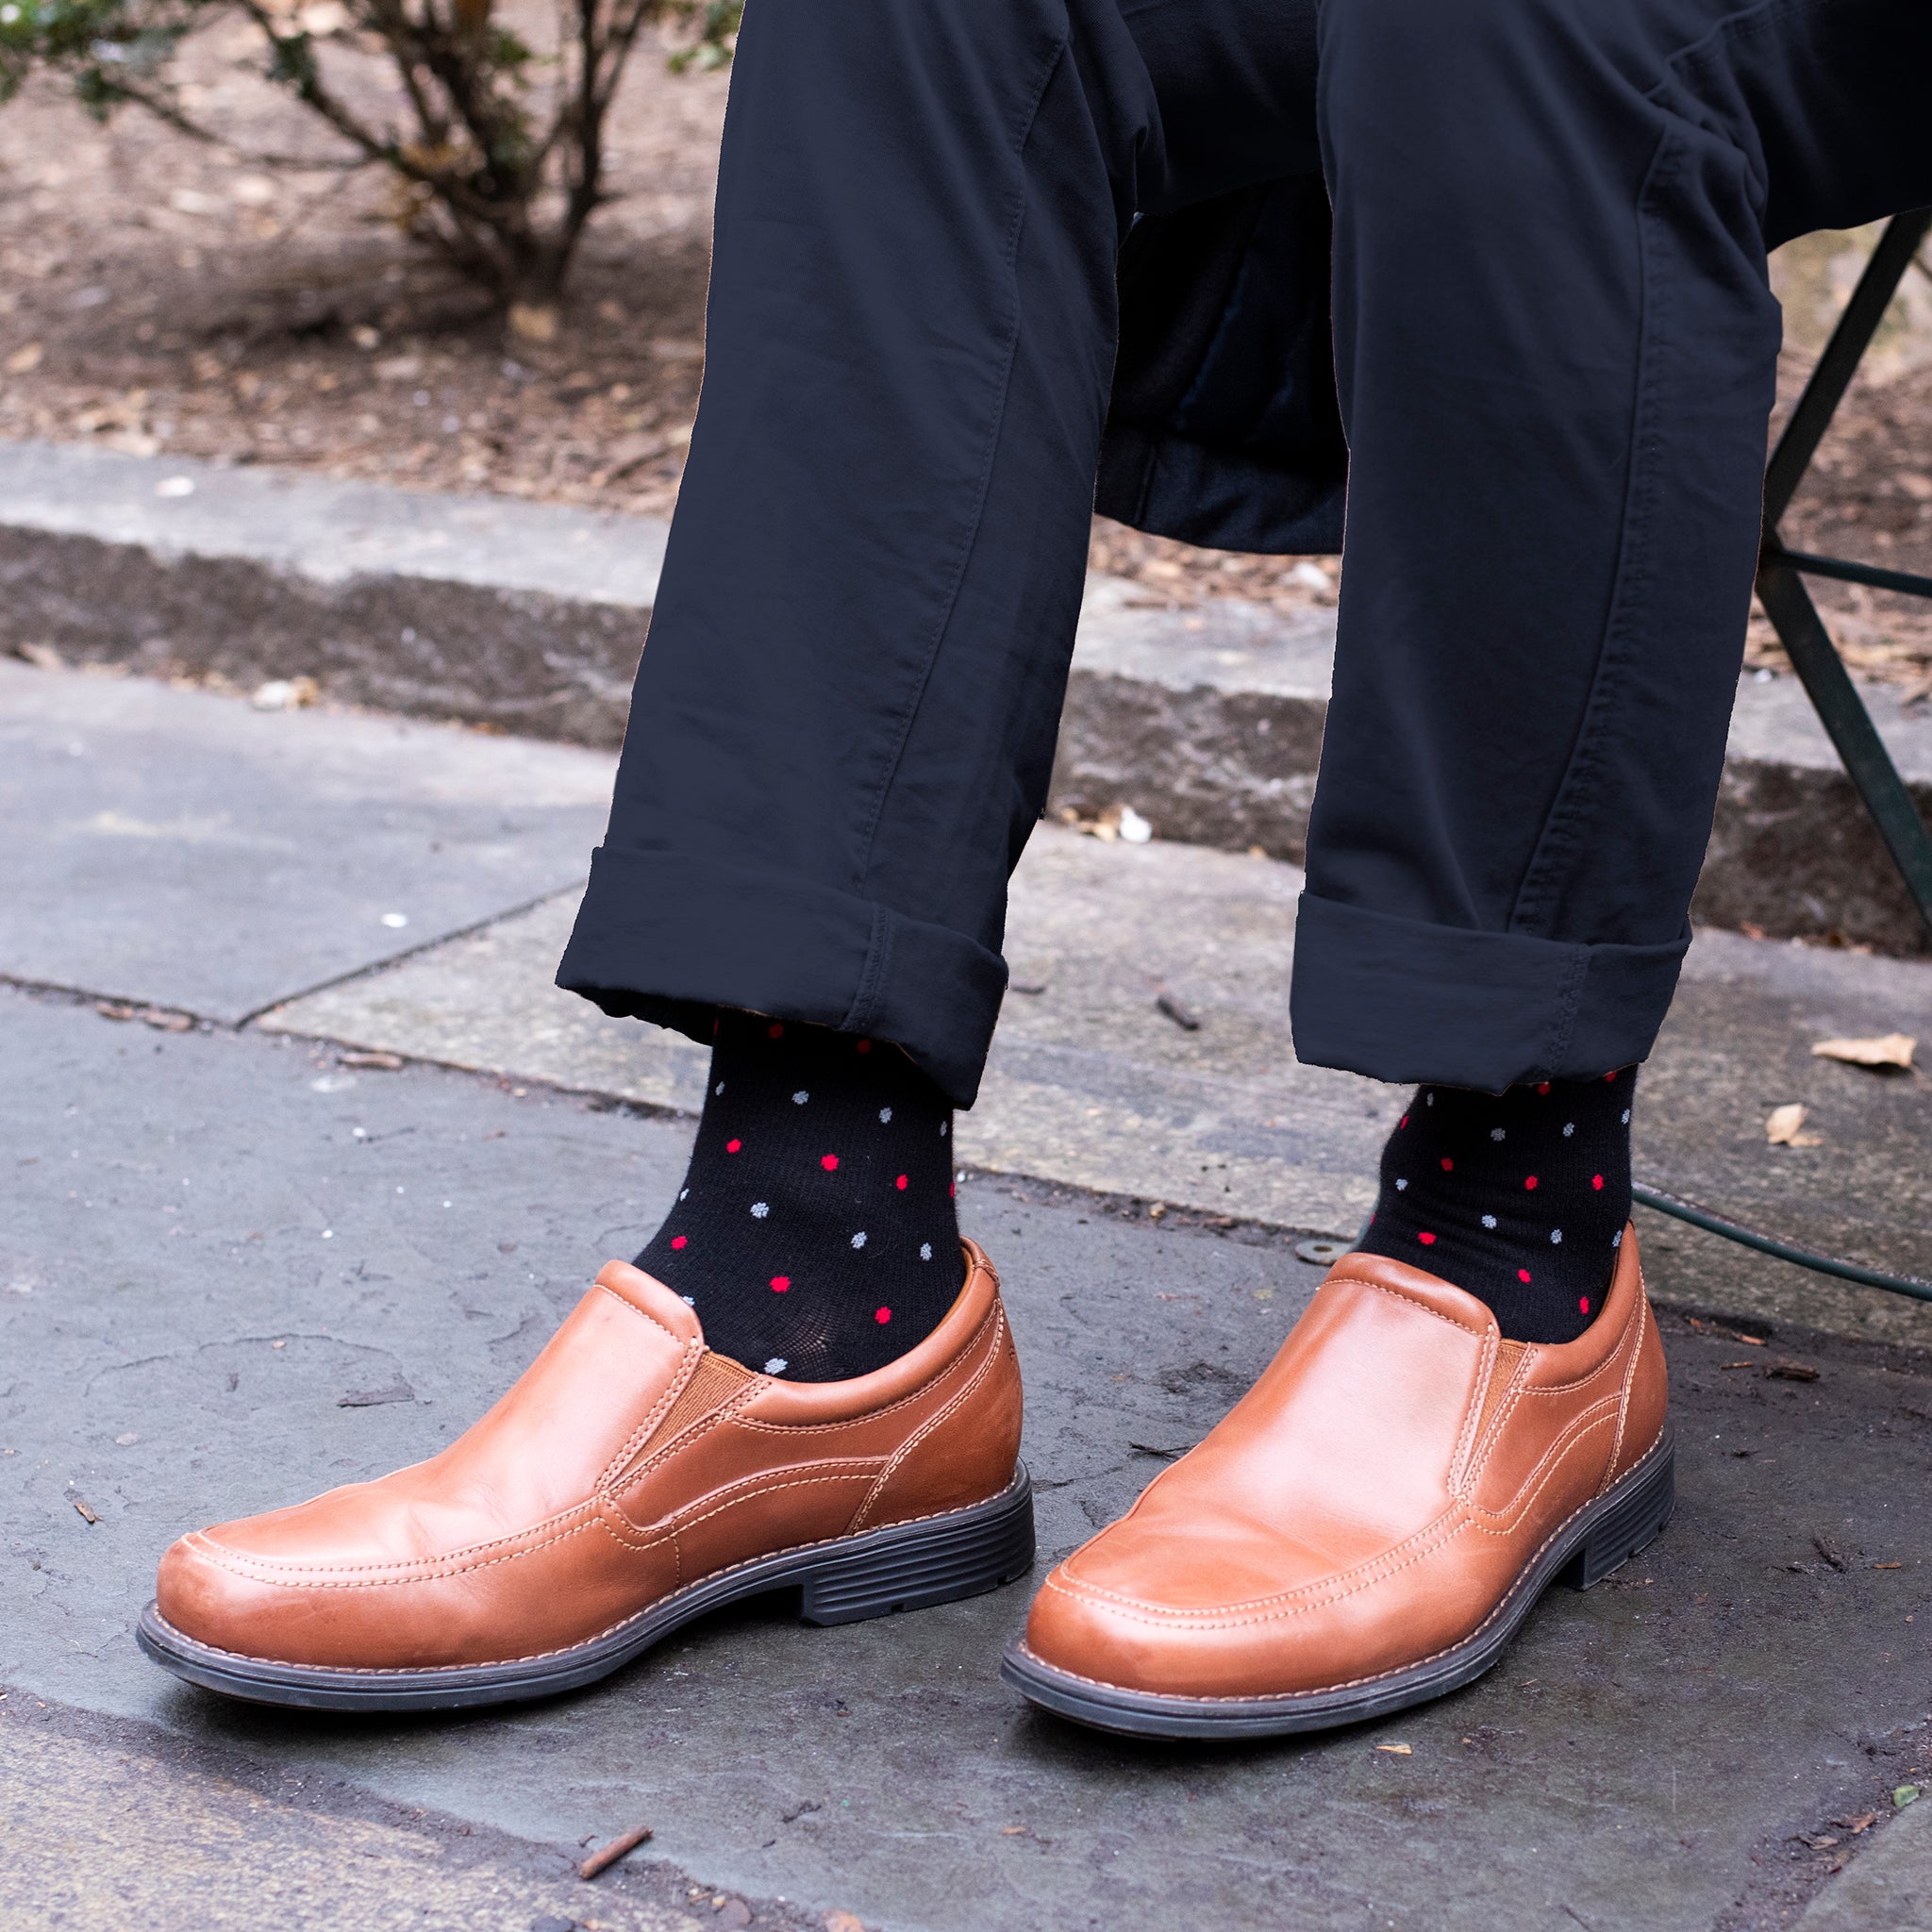 Multi Dots | Knee-High Compression Socks For Men